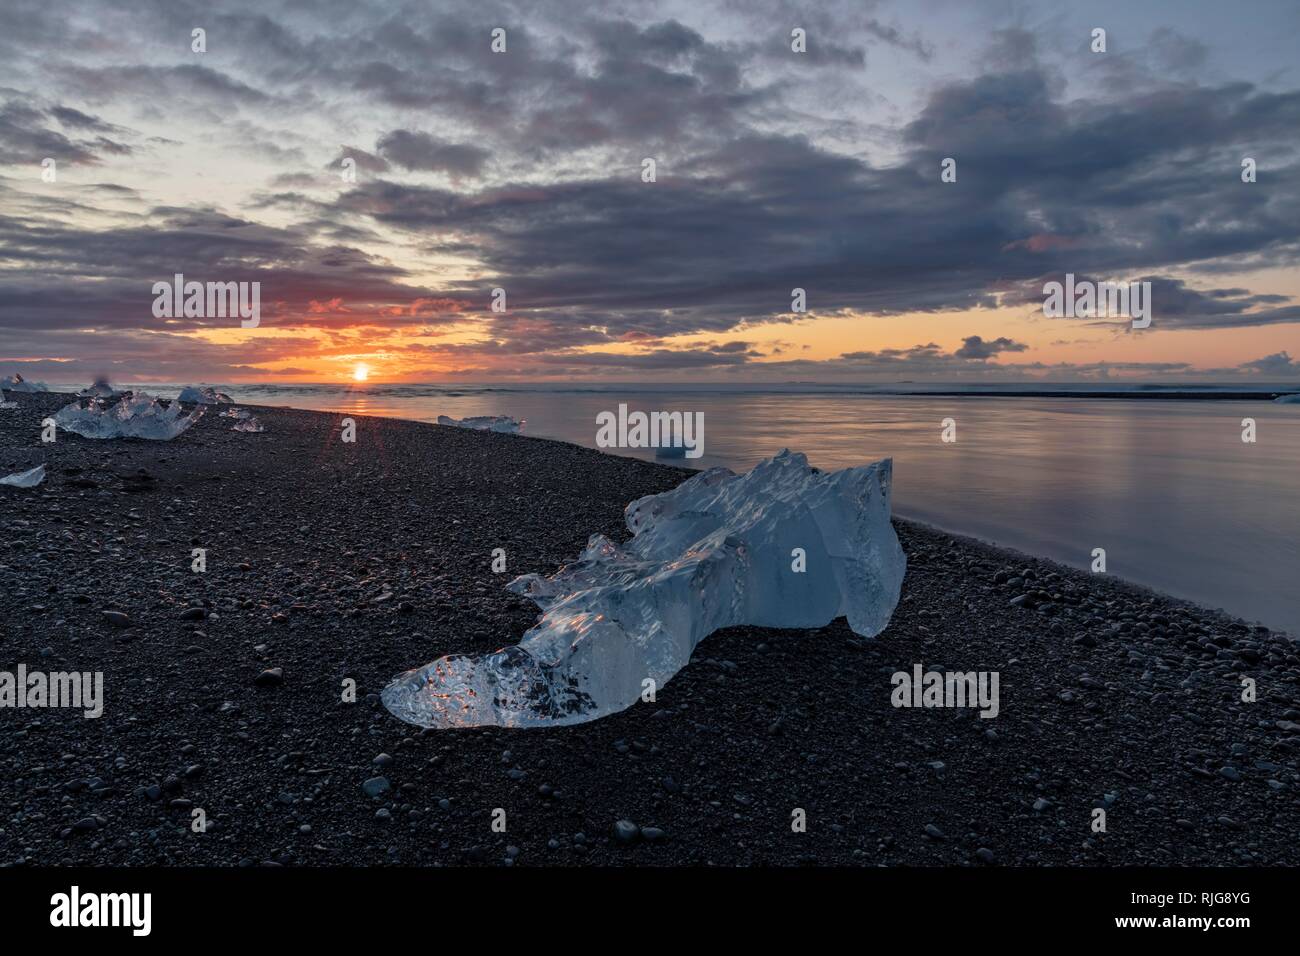 Banc de glace sur la plage de lave noire au lever du soleil, glacier Jökulsárlón, lagune, l'Islande Banque D'Images